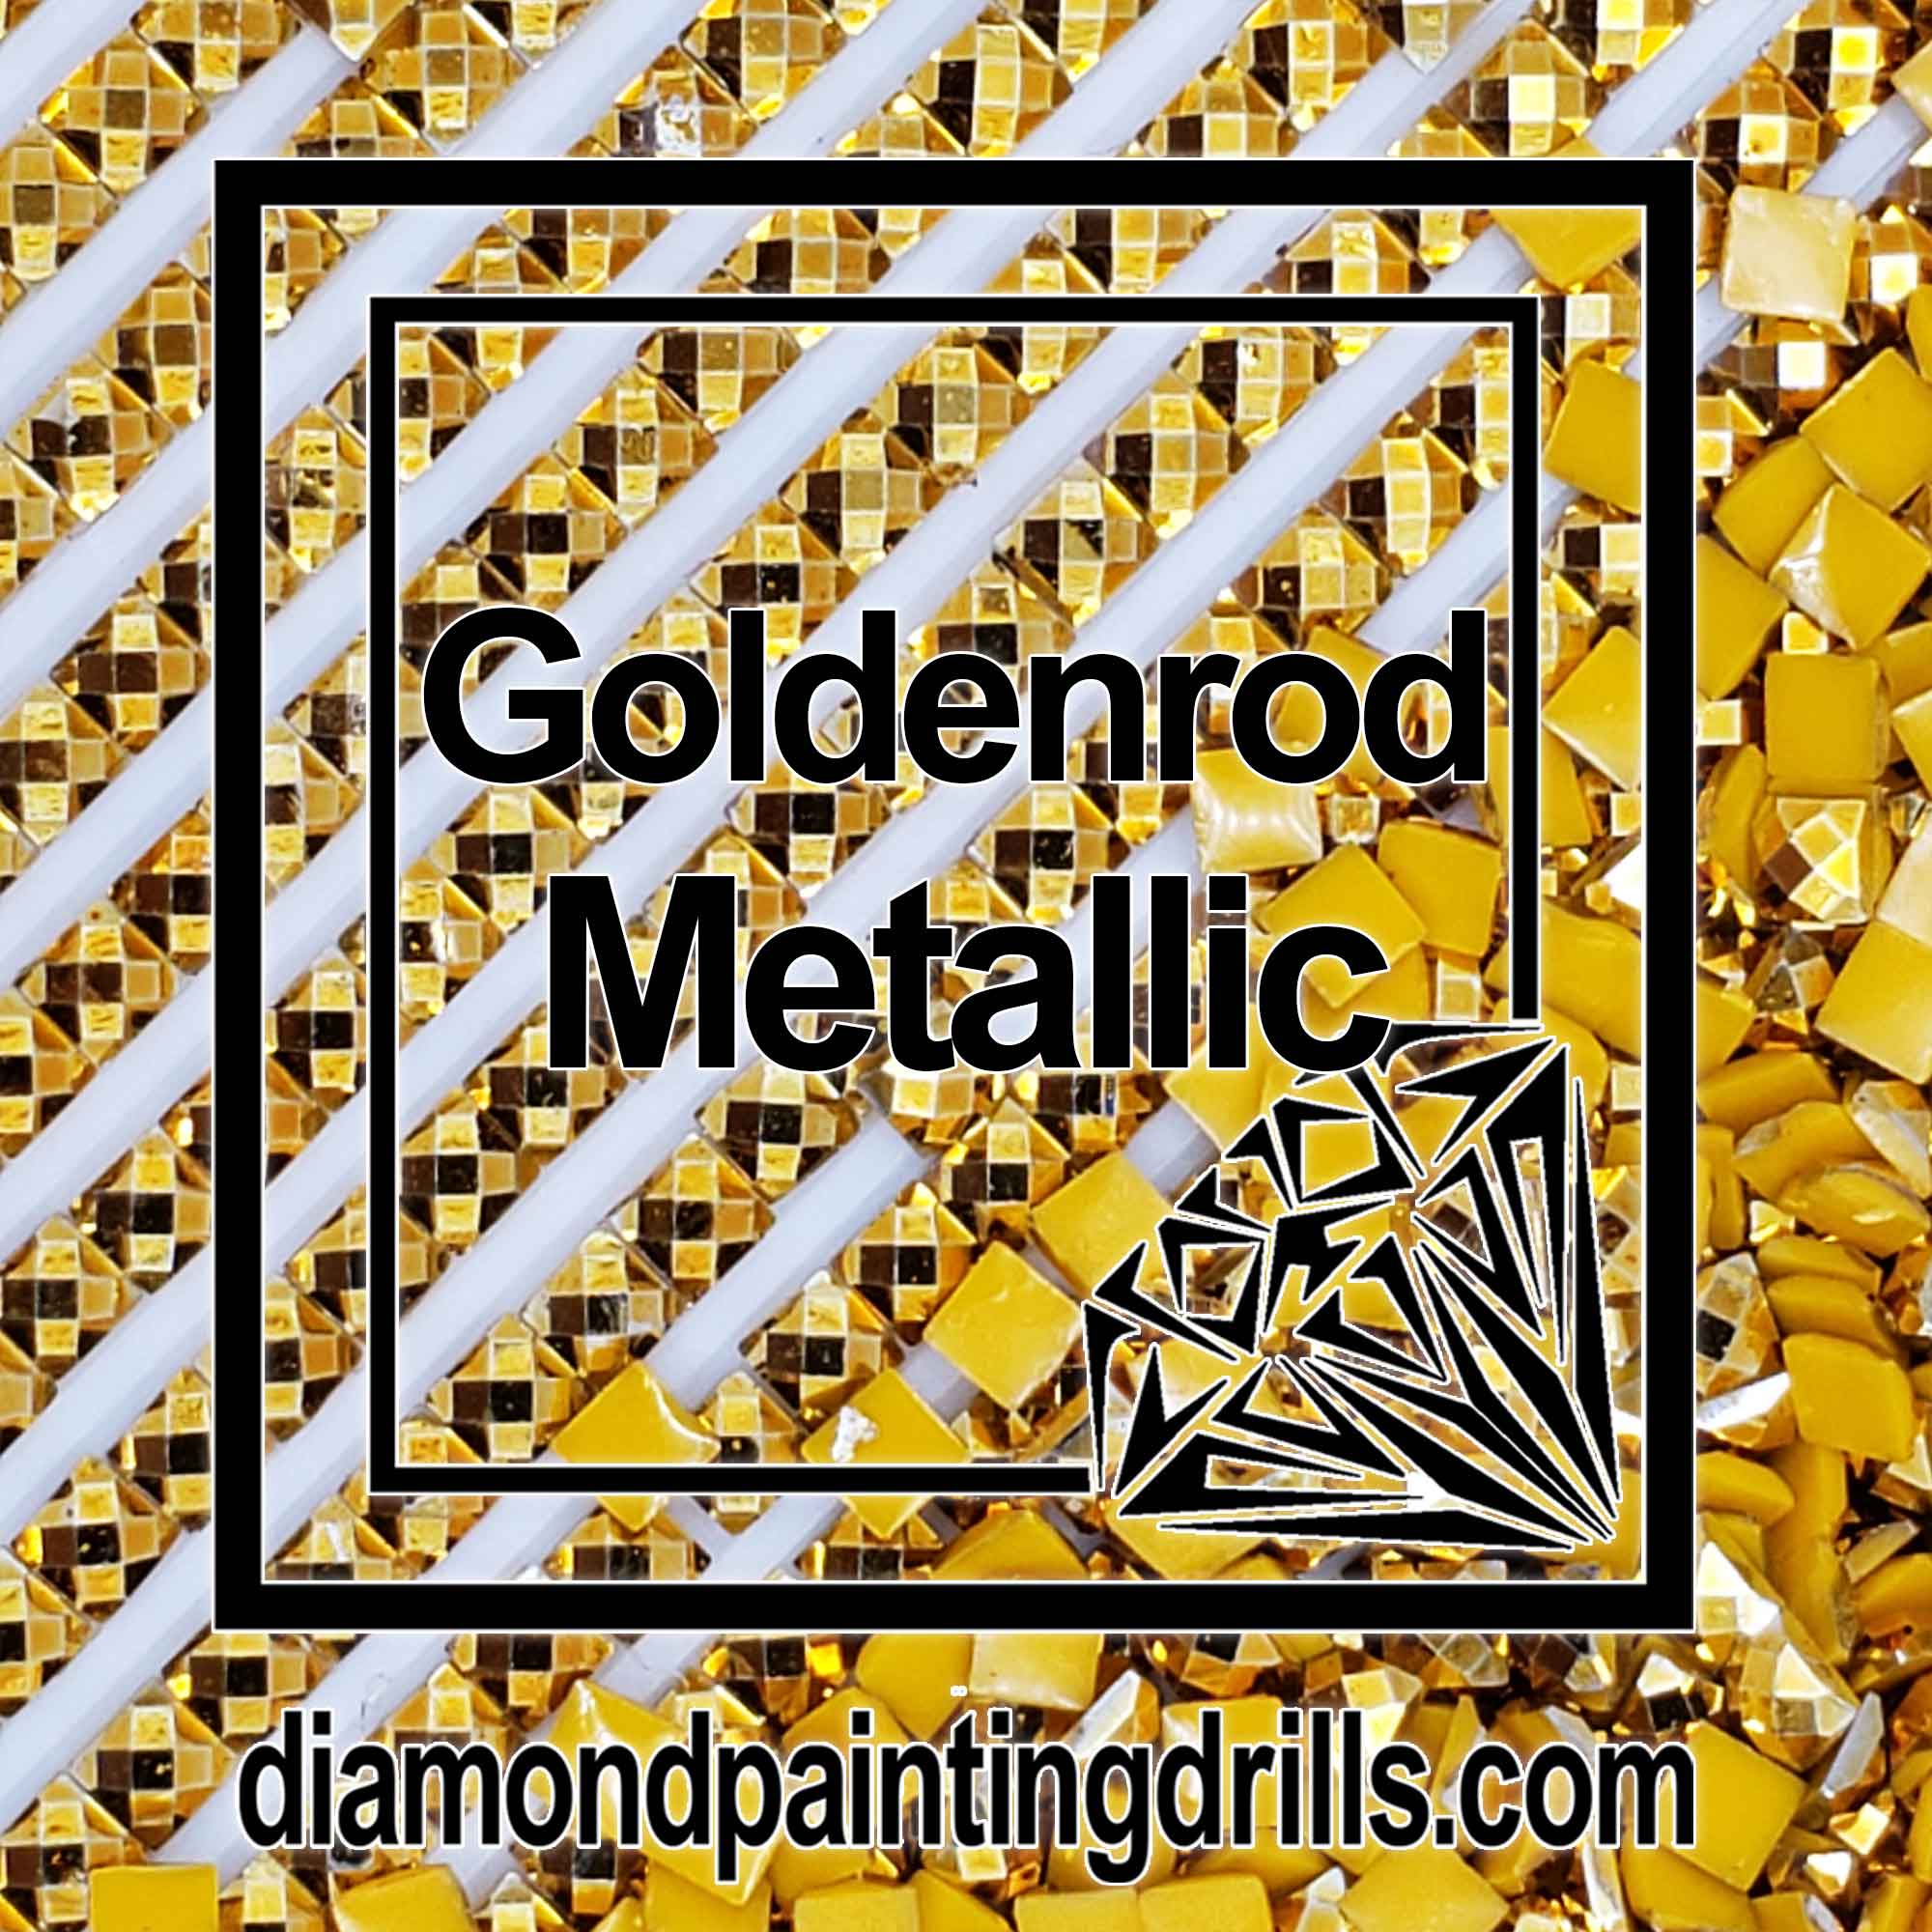 Yellow Metallic Drills - Square - Diamond Painting Drills